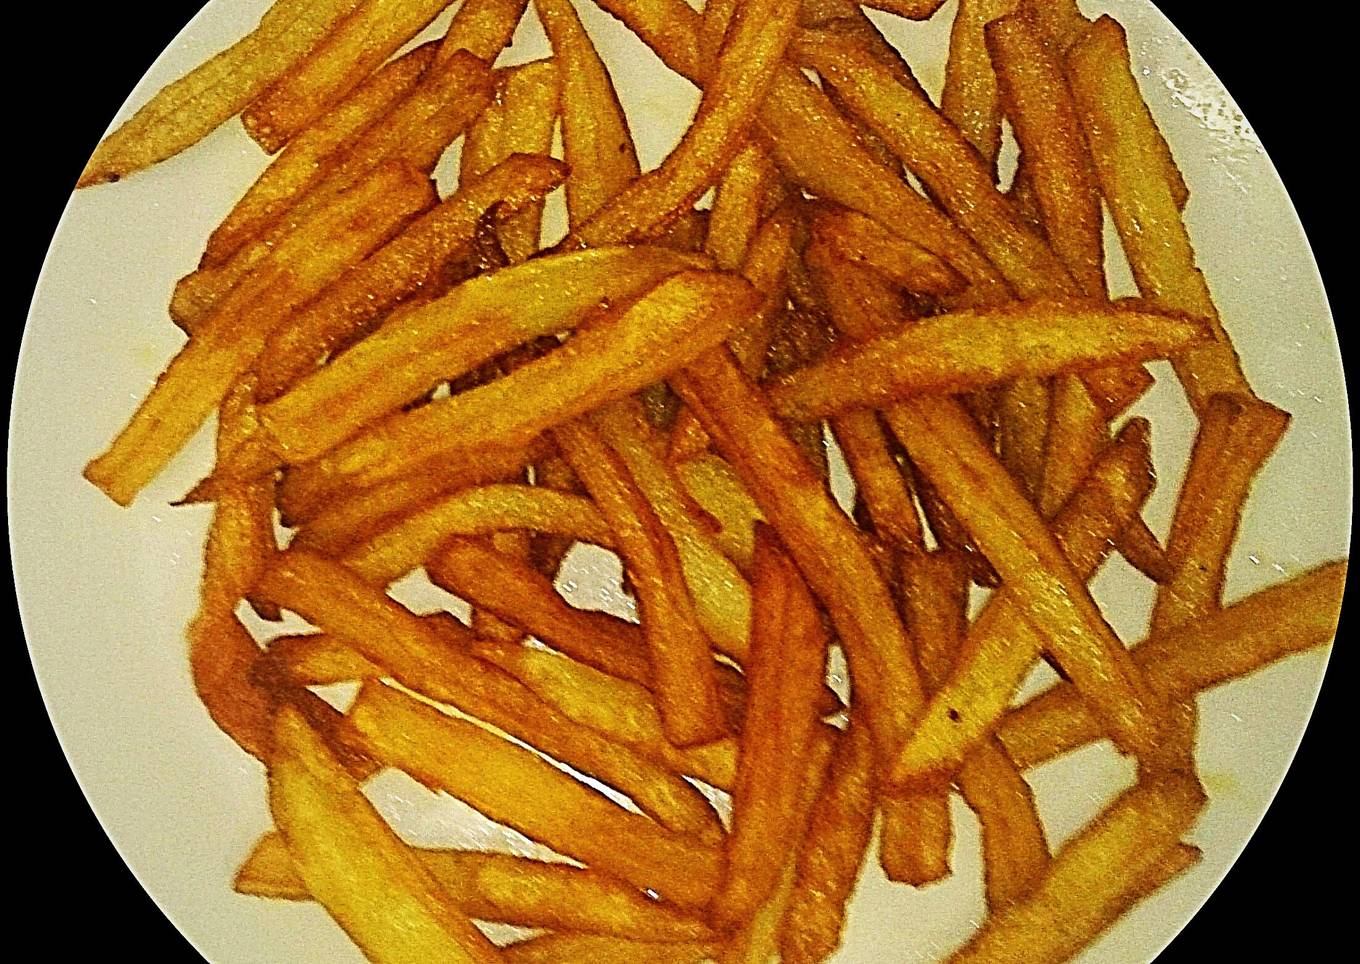 Tex's McDonalds French Fries ðŸ Ÿ